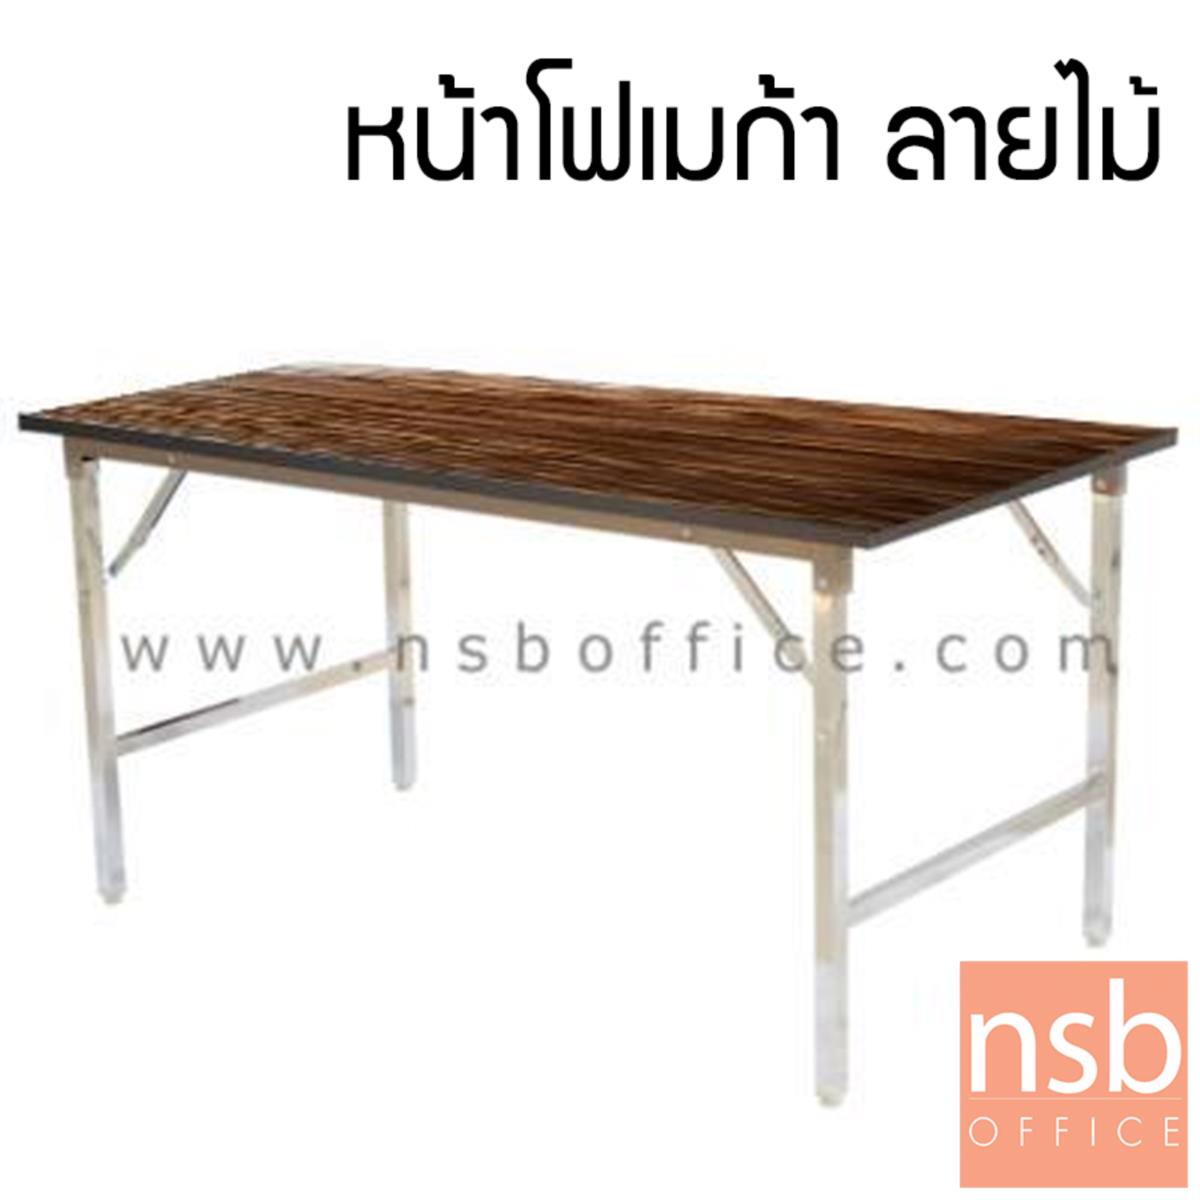 A07A075:โต๊ะพับหน้าโฟเมก้าลายไม้ รุ่น navut (นาวุต)  